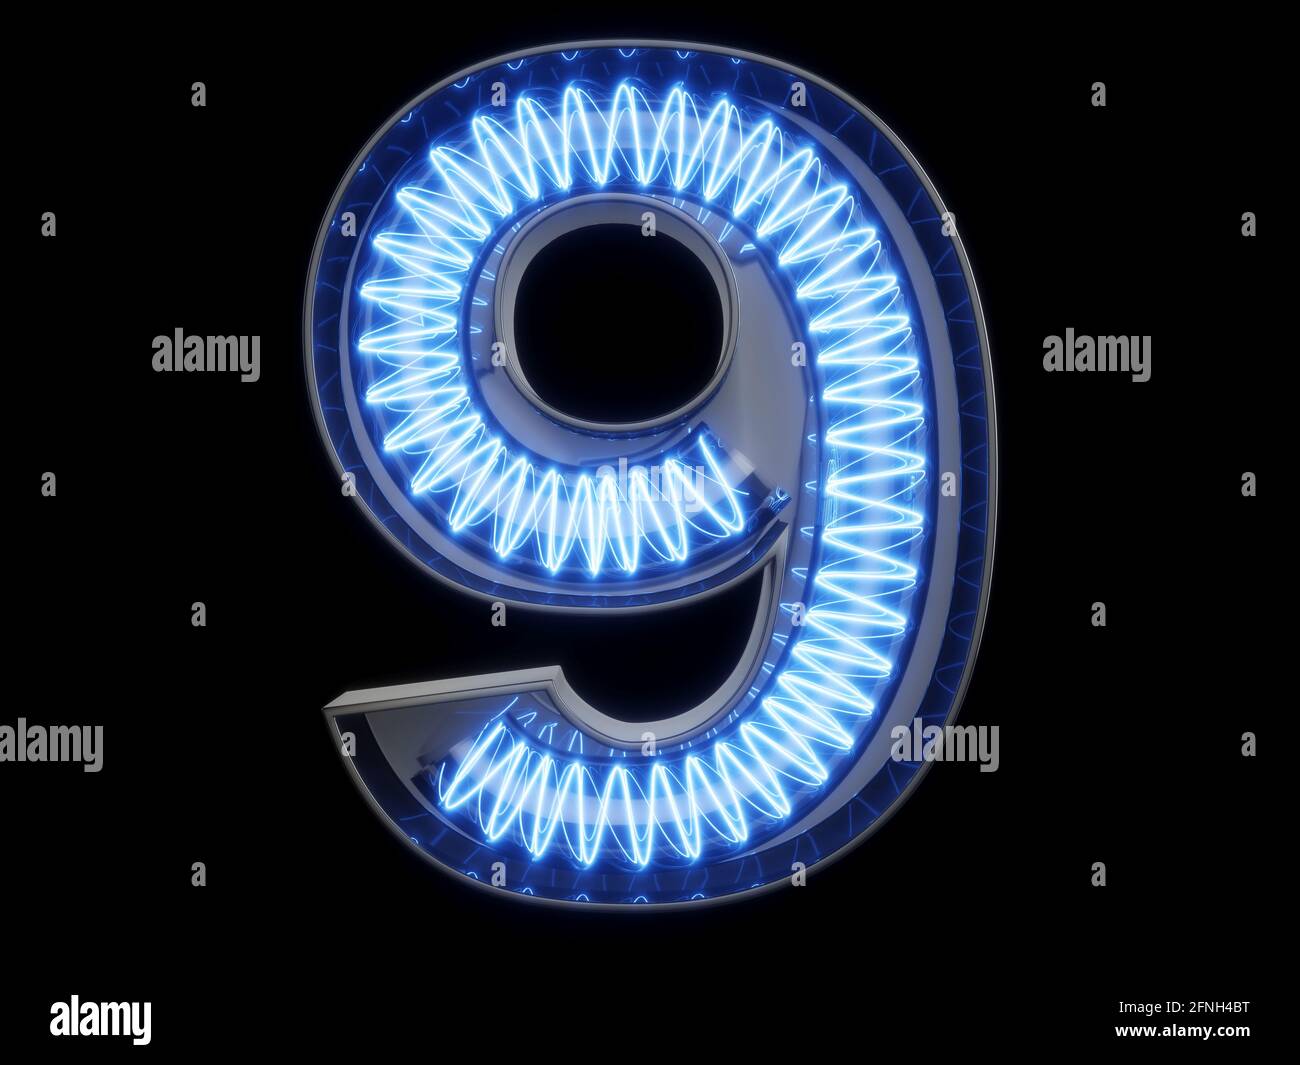 Caractère alphabétique à chiffres lumineux en spirale clair 9 neuf caractères. Vue de face symbole 9 allumé sur fond noir. illustration du rendu 3d Banque D'Images